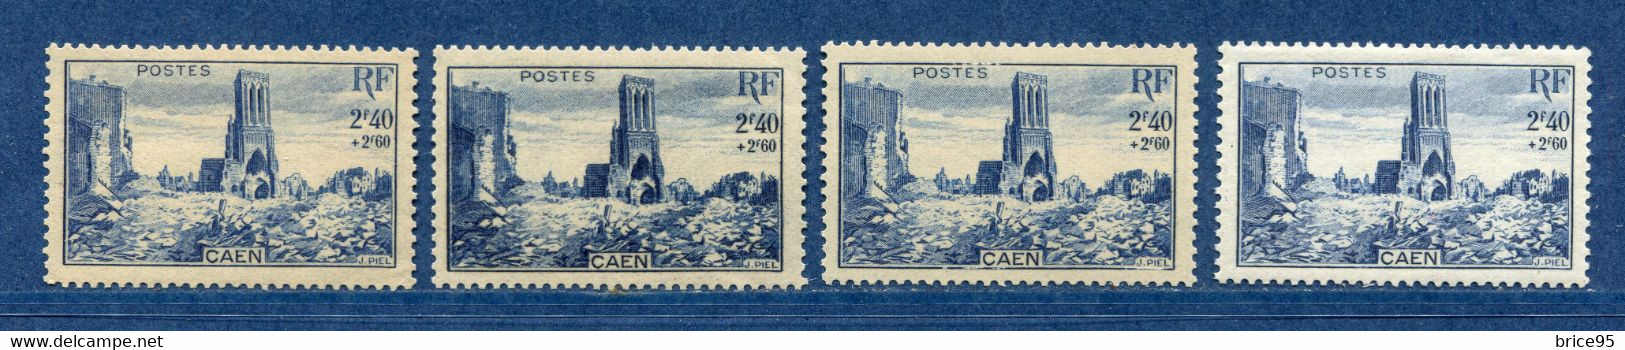 ⭐ France - Variété - YT N° 746 - Couleurs - Pétouille - Neuf Sans Charnière - 1945 ⭐ - Nuevos